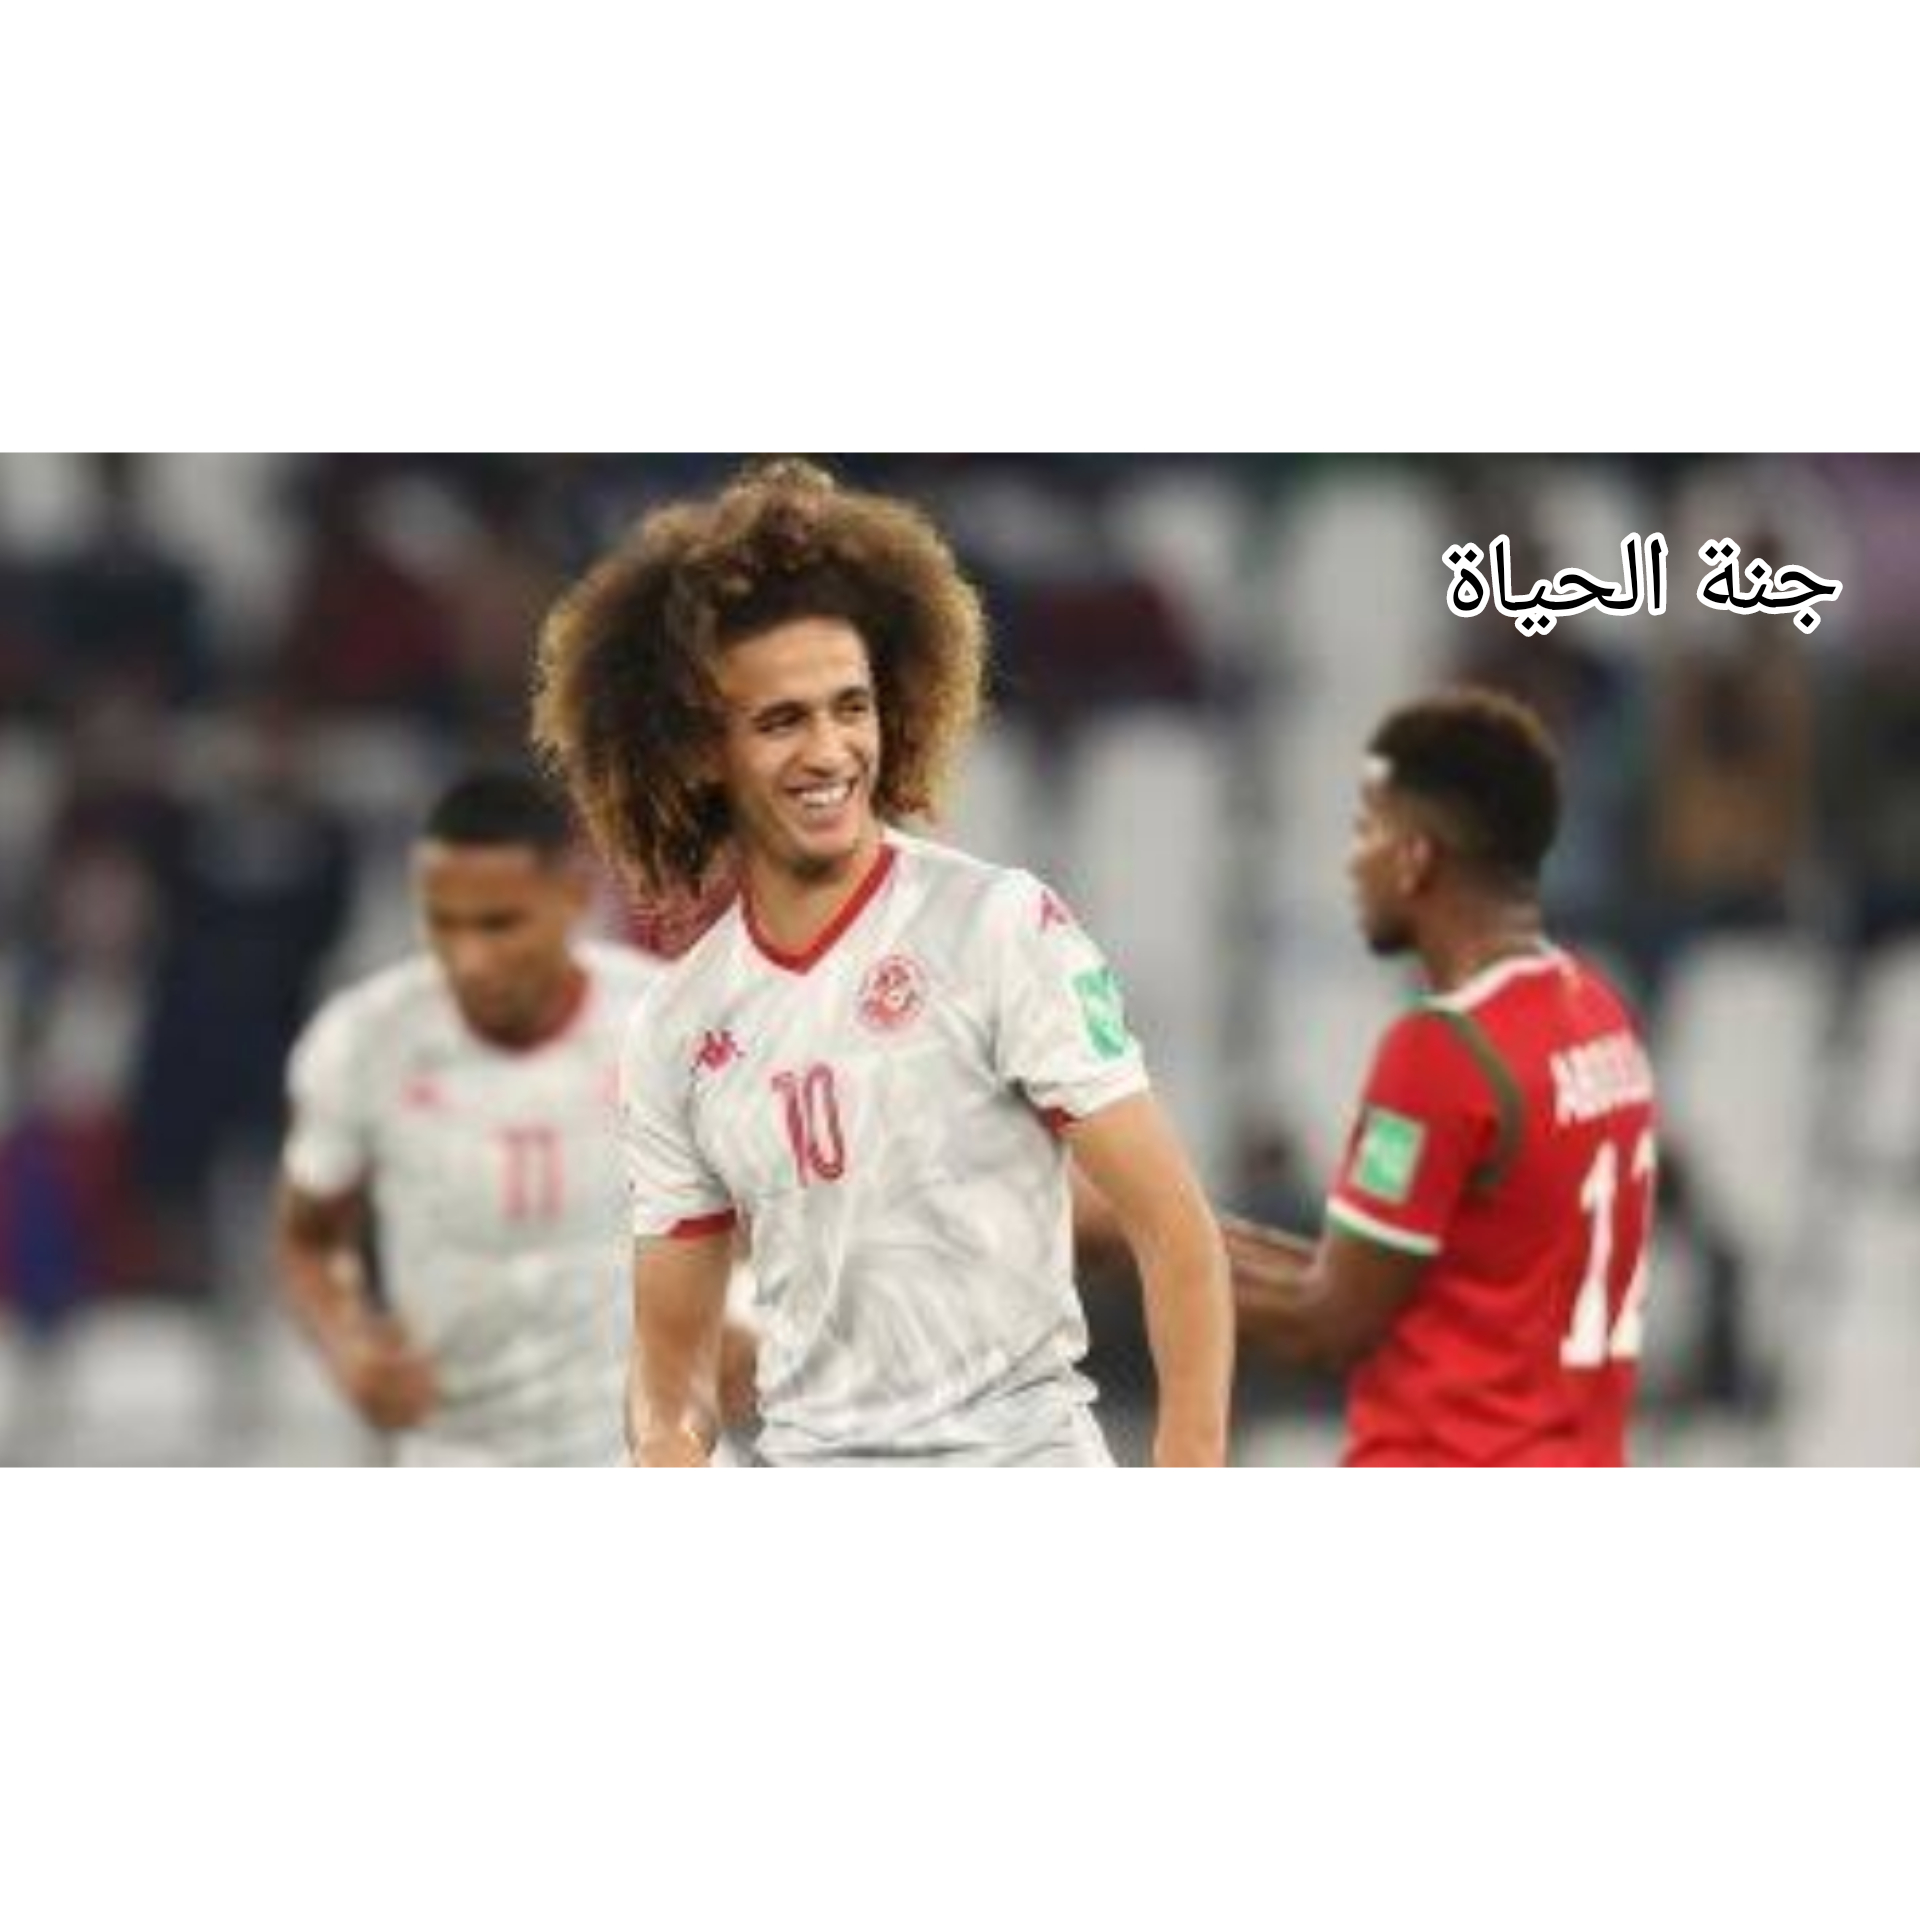 تصريحات حنبعل بعد مباراة تونس والفراعنه تشعل الوسط الكروى